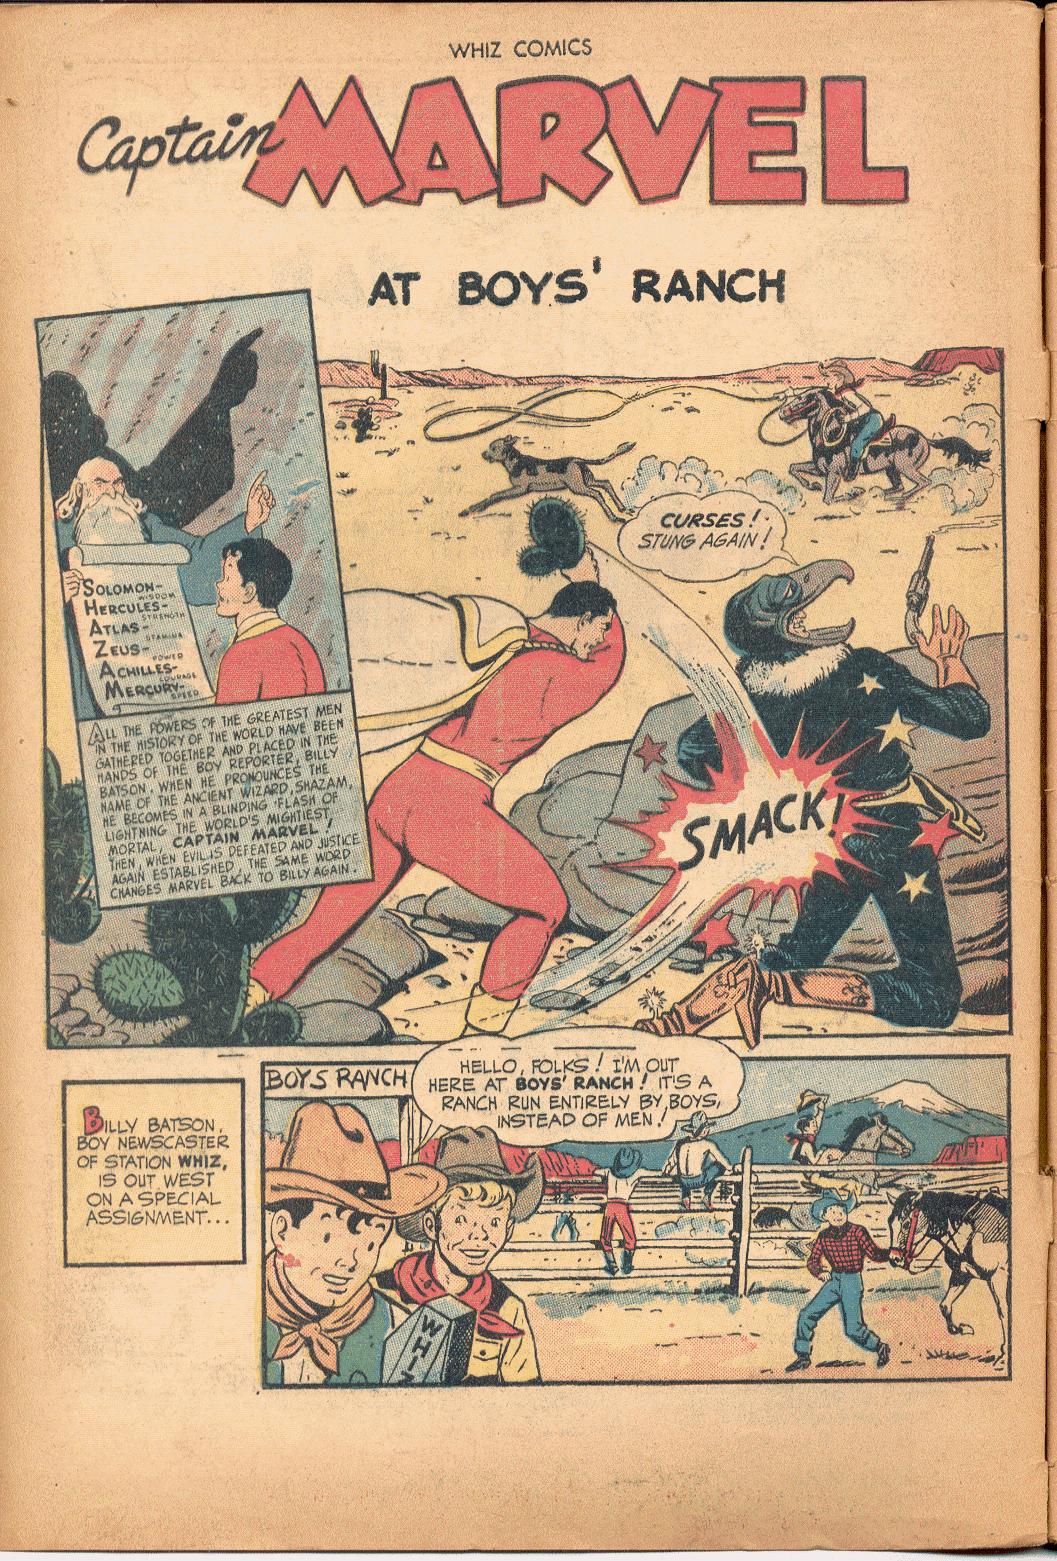 whiz comics #103 boys ranch splash page